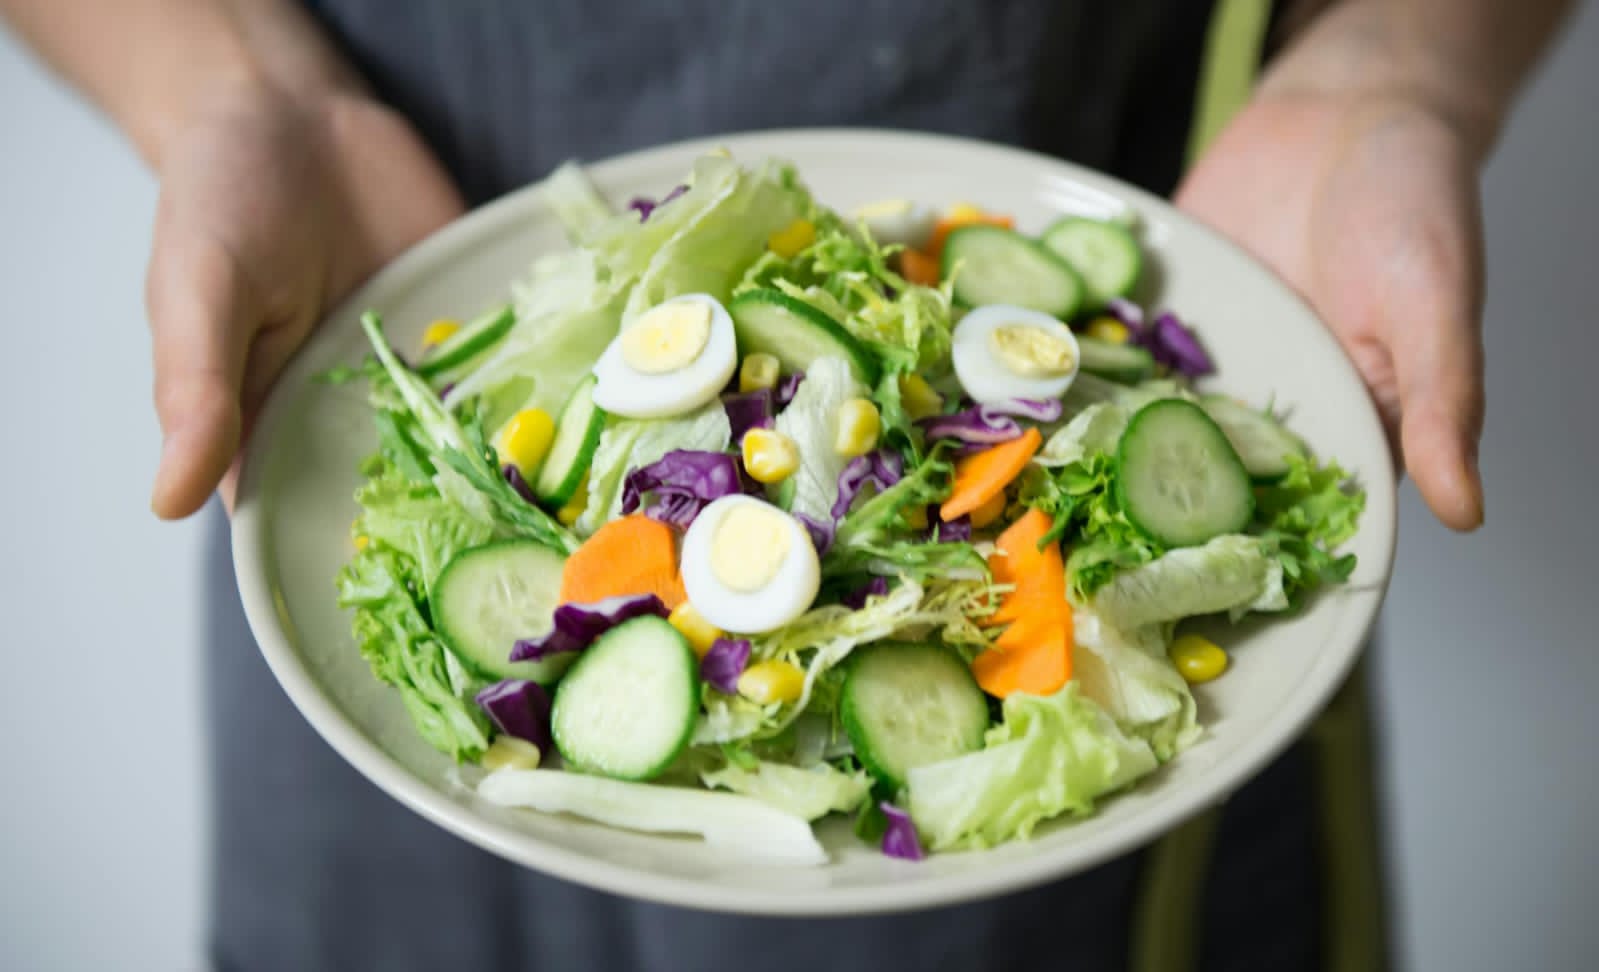 Healthy Dinner Ideas: Delicious and Nutritious Choices - Shareit APK